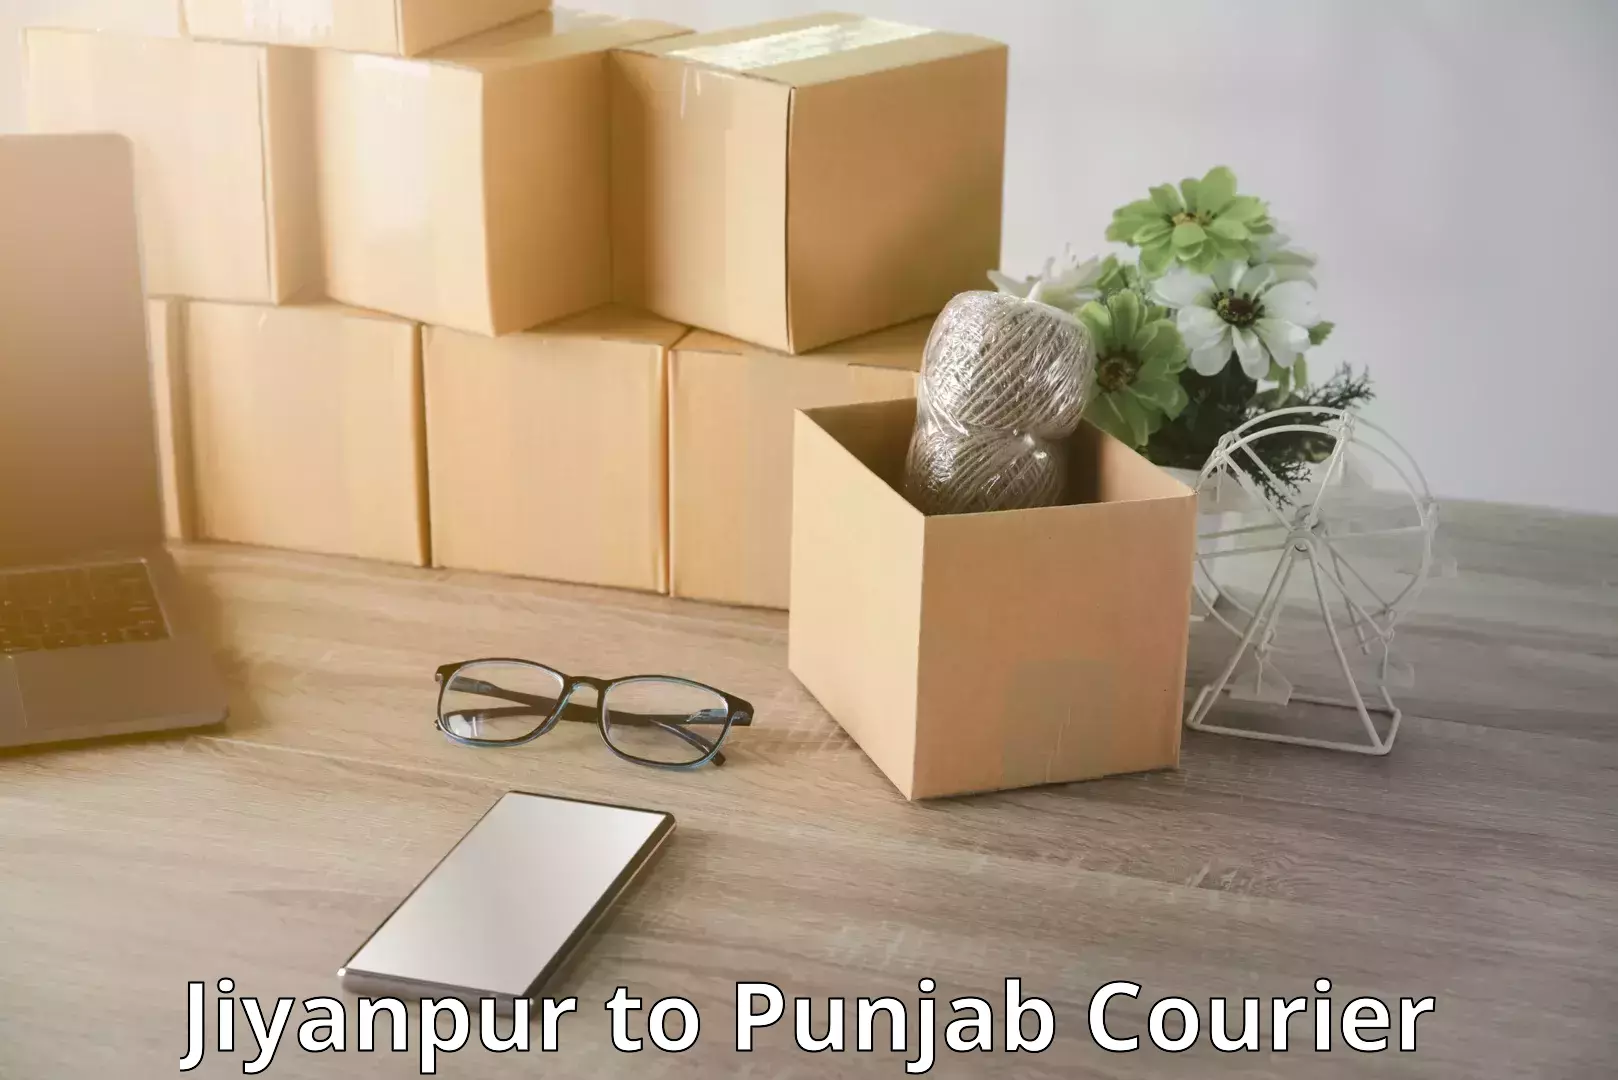 Luggage shipment processing in Jiyanpur to Punjab